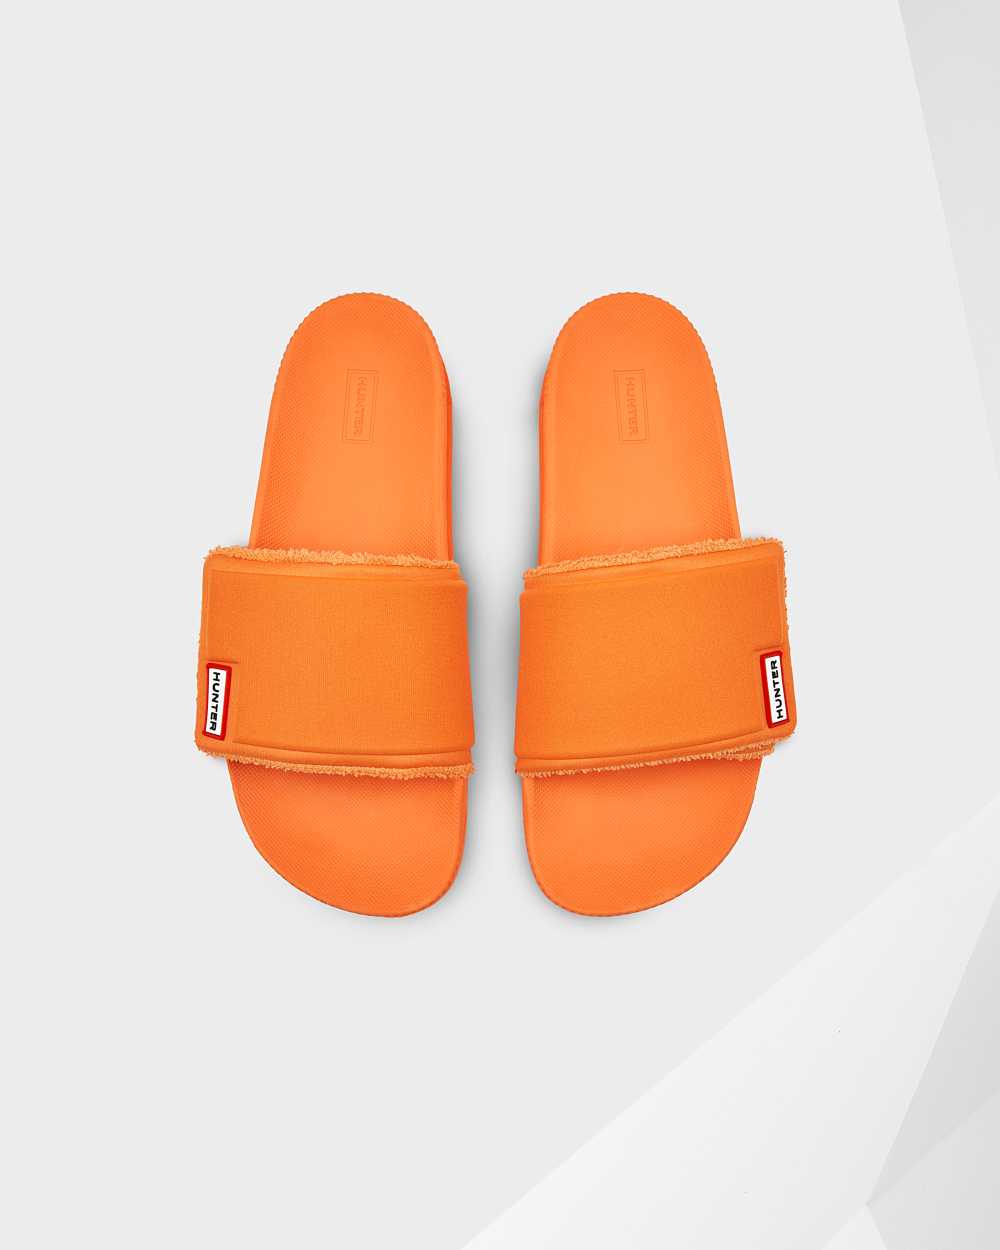 Hunter Men's Original Adjustable Slides Orange,OJNS26895